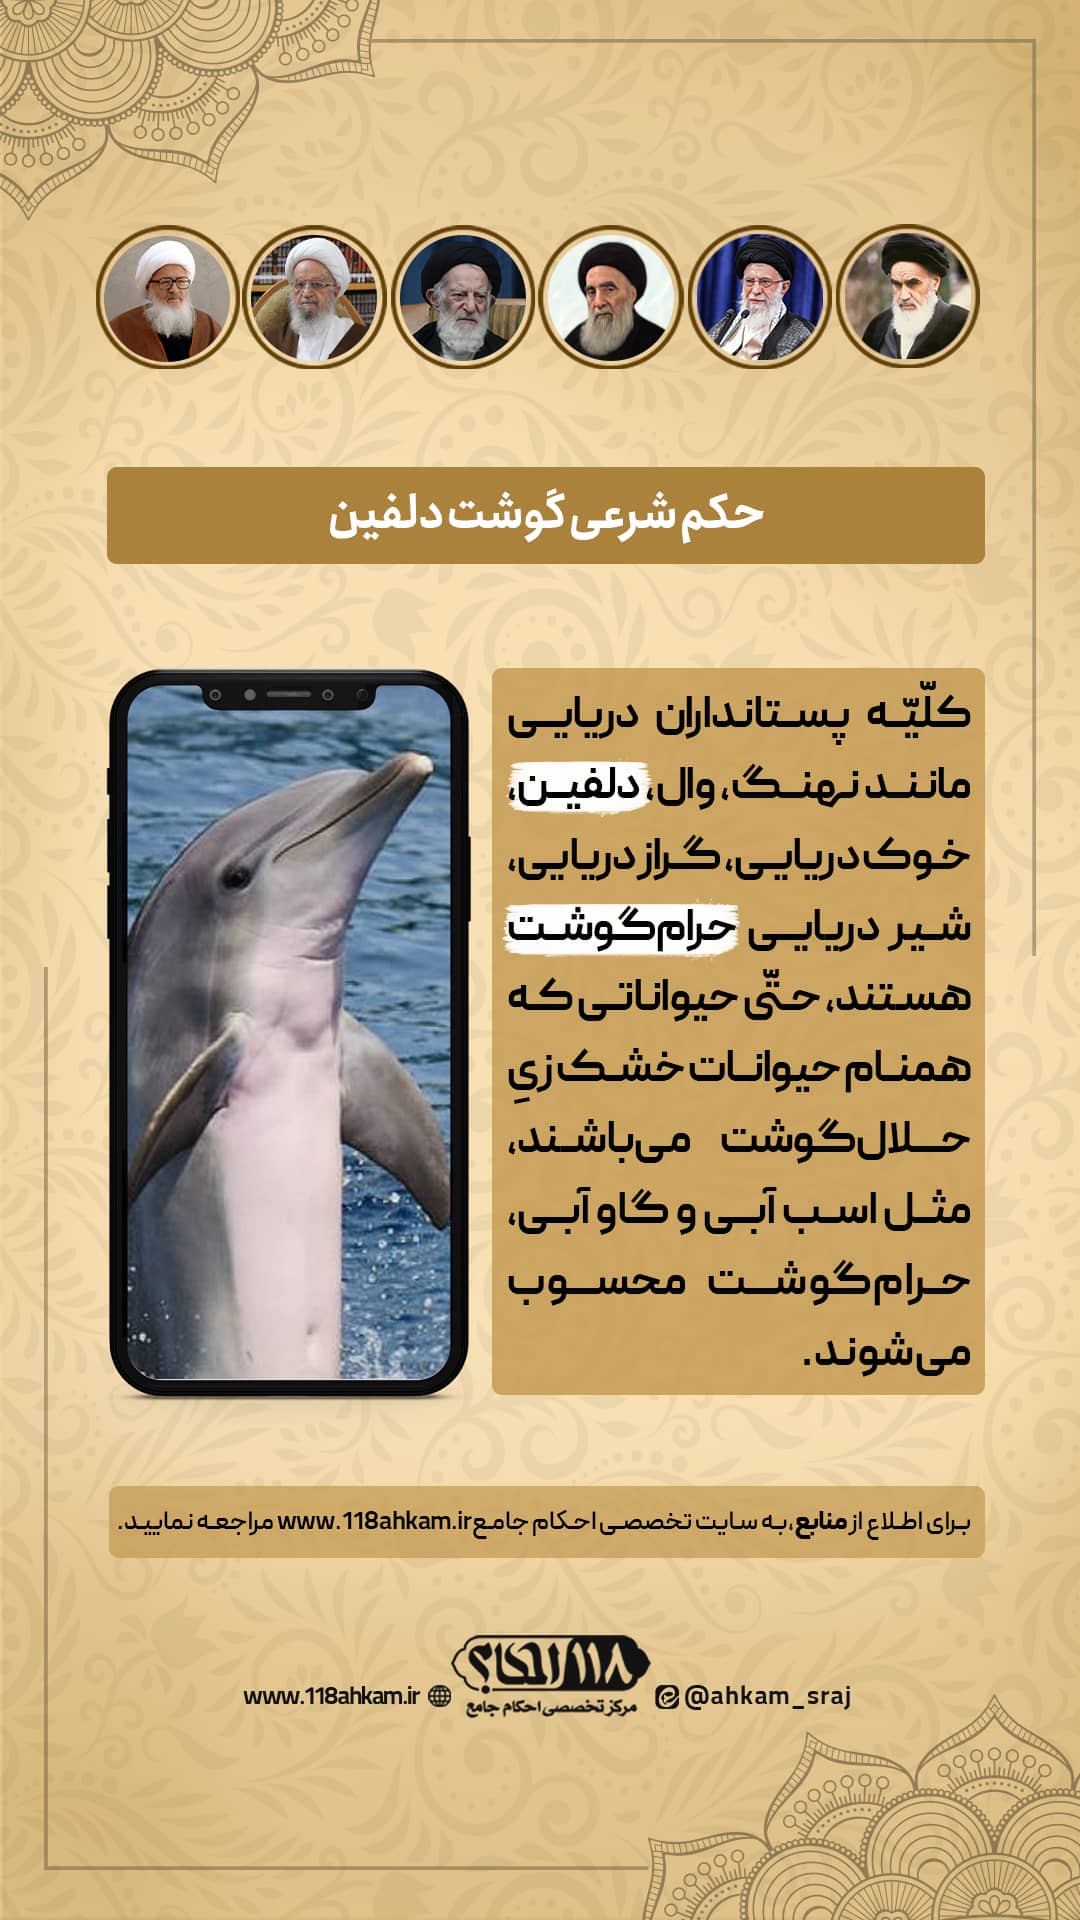 حکم شرعی خوردن گوشت دلفین و پستانداران دریایی " به مناسبت ۱۴ آوریل، روز جهانی دلفین "